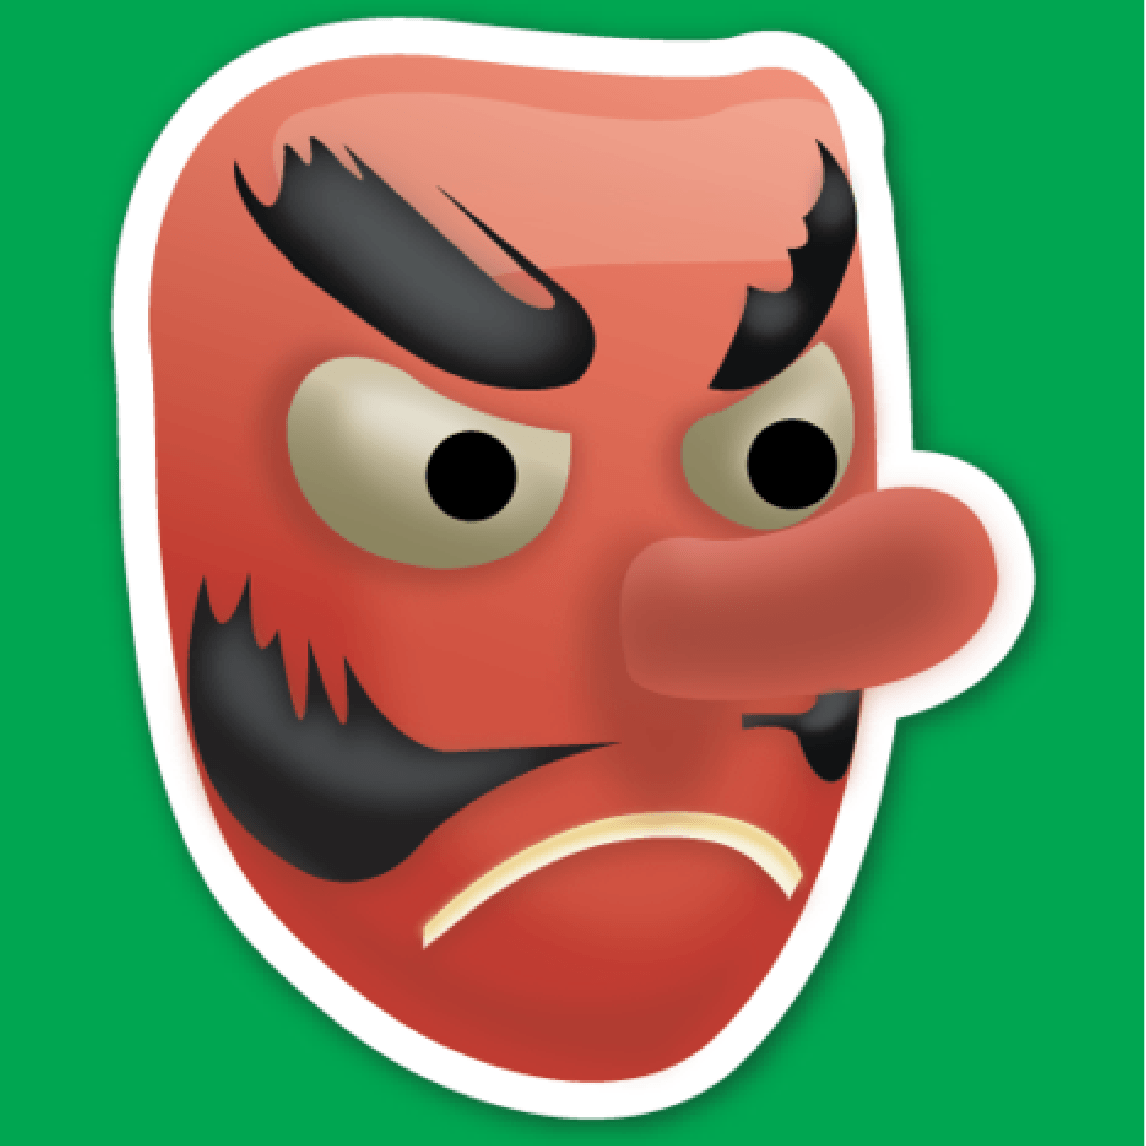 Phone Emoji Red Logo - Japanese Emojis Explained